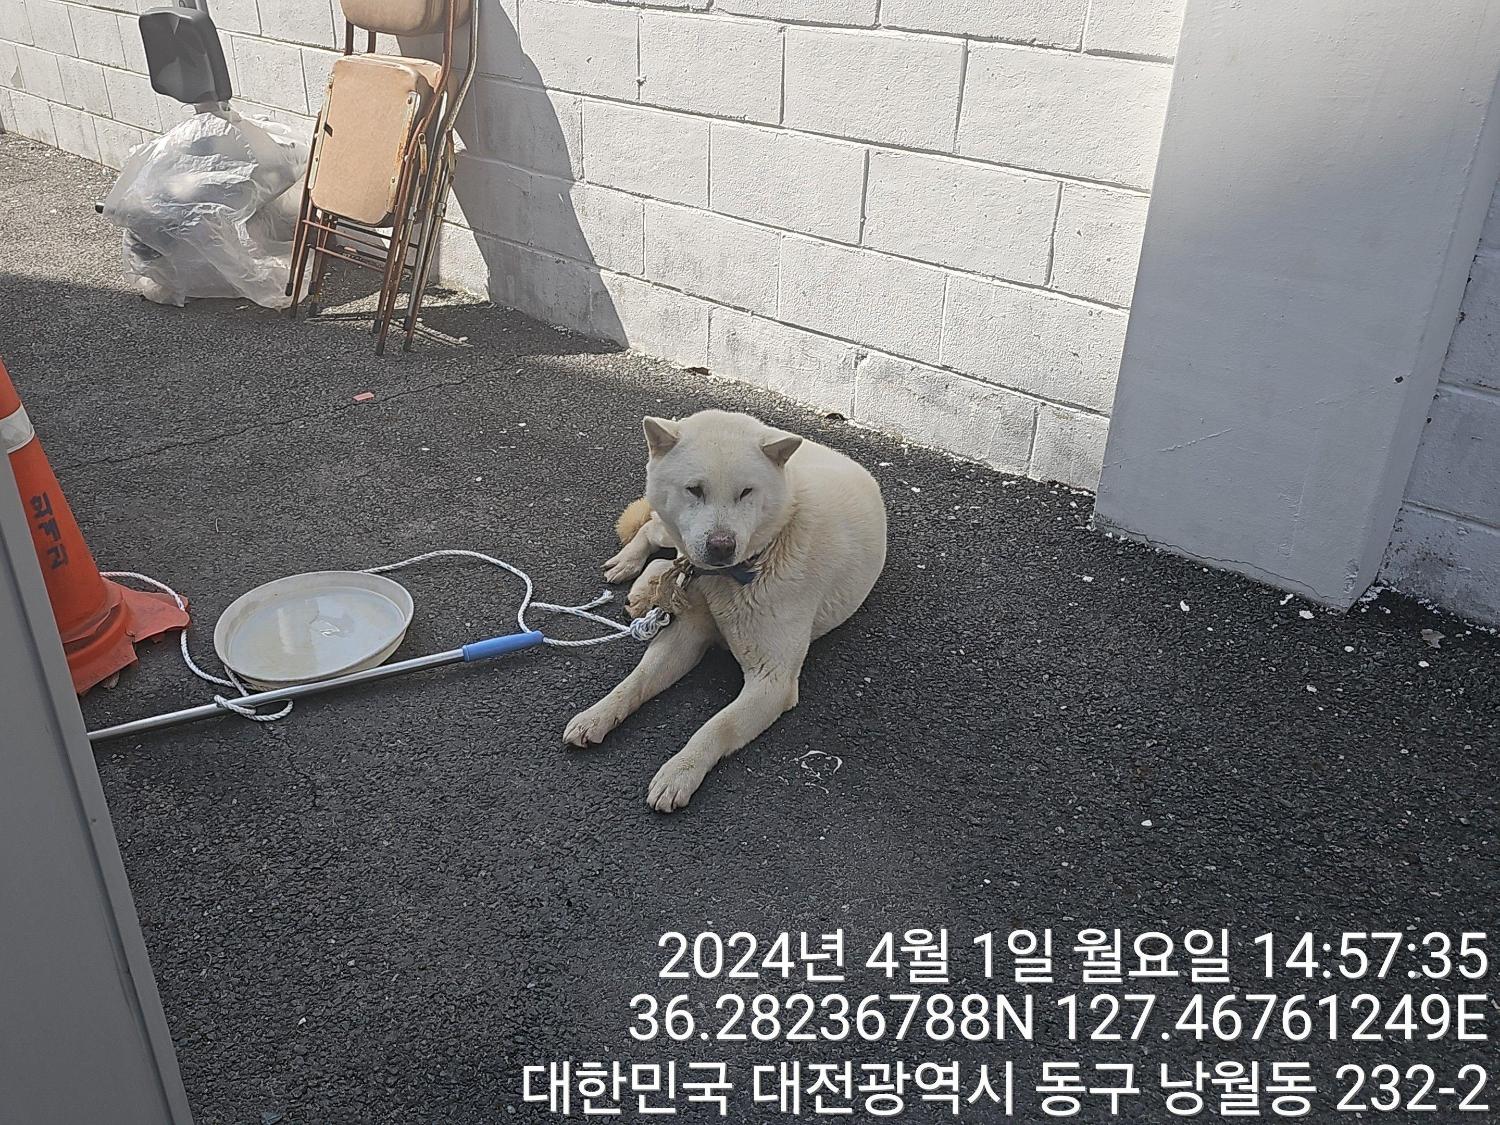 공고 번호가 대전-동구-2024-00080인 진도견 동물 사진